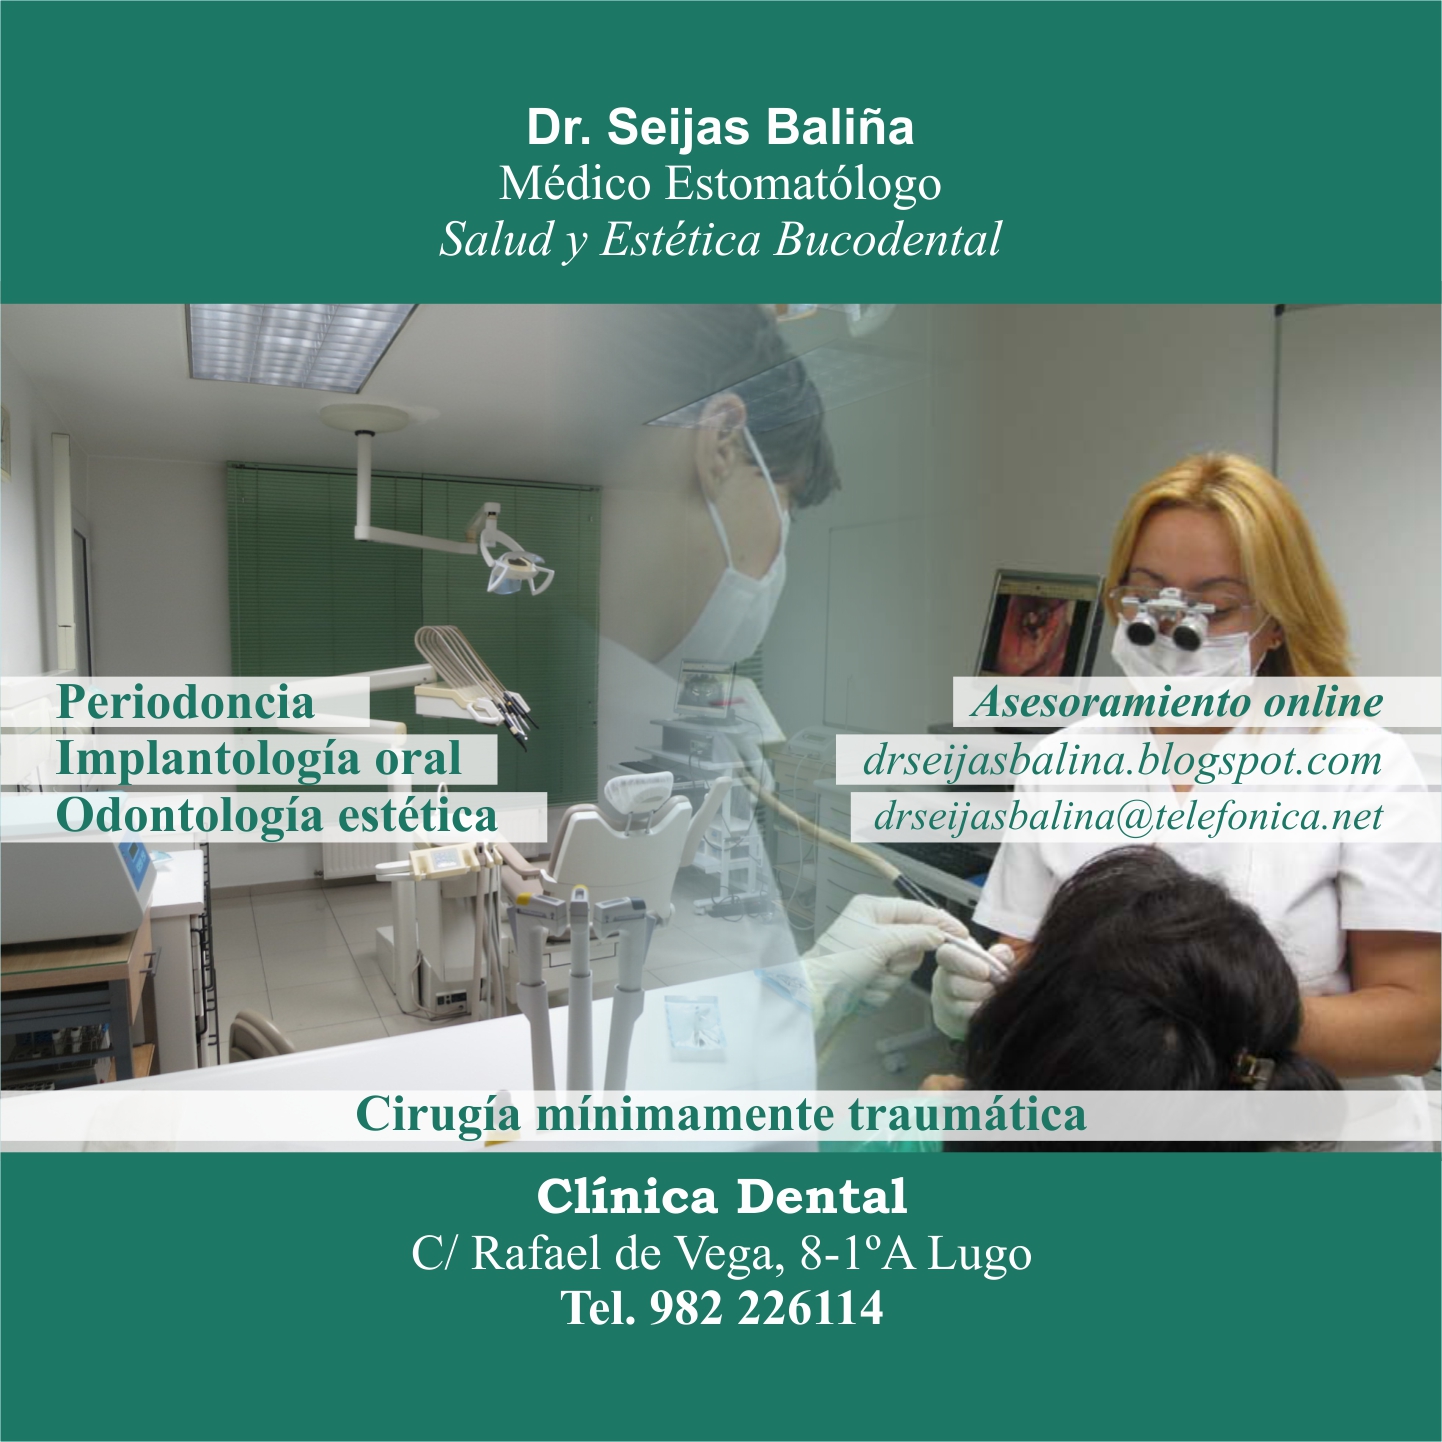 Images Dr. Seijas Baliña